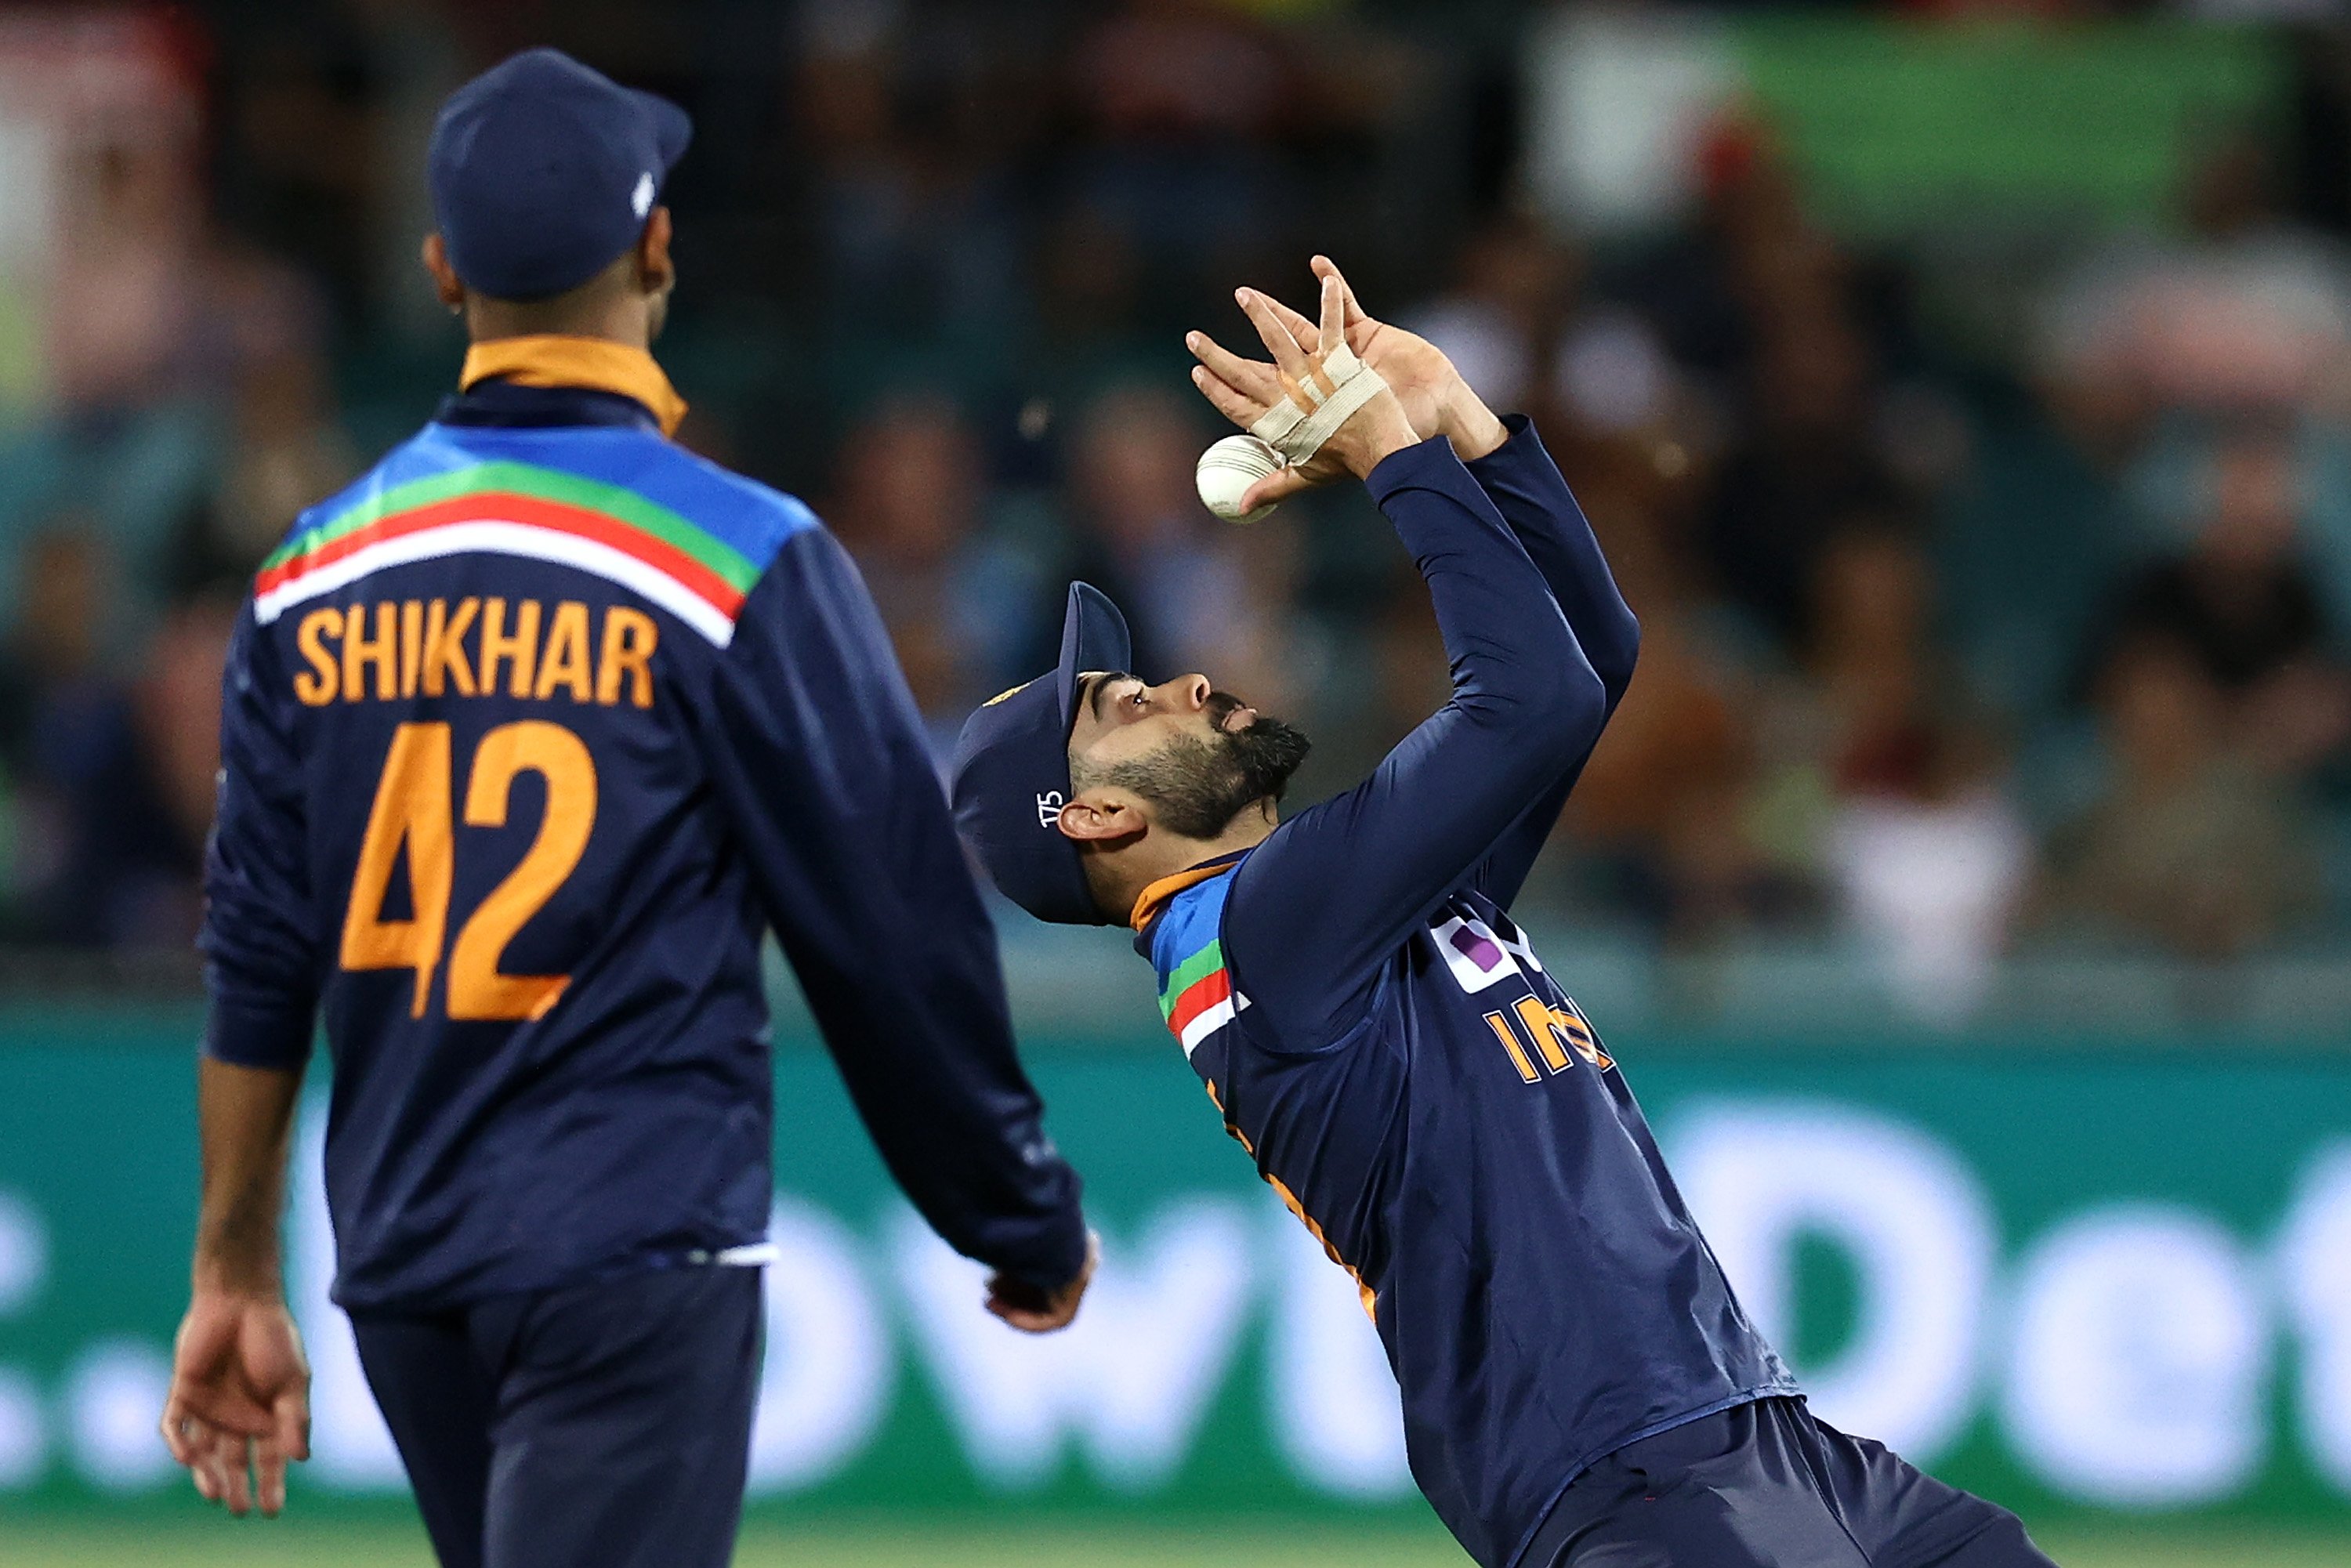 टी-२० श्रृंखलाकाे पहिलाे खेलमा अष्ट्रेलिया भारतसँग पराजित